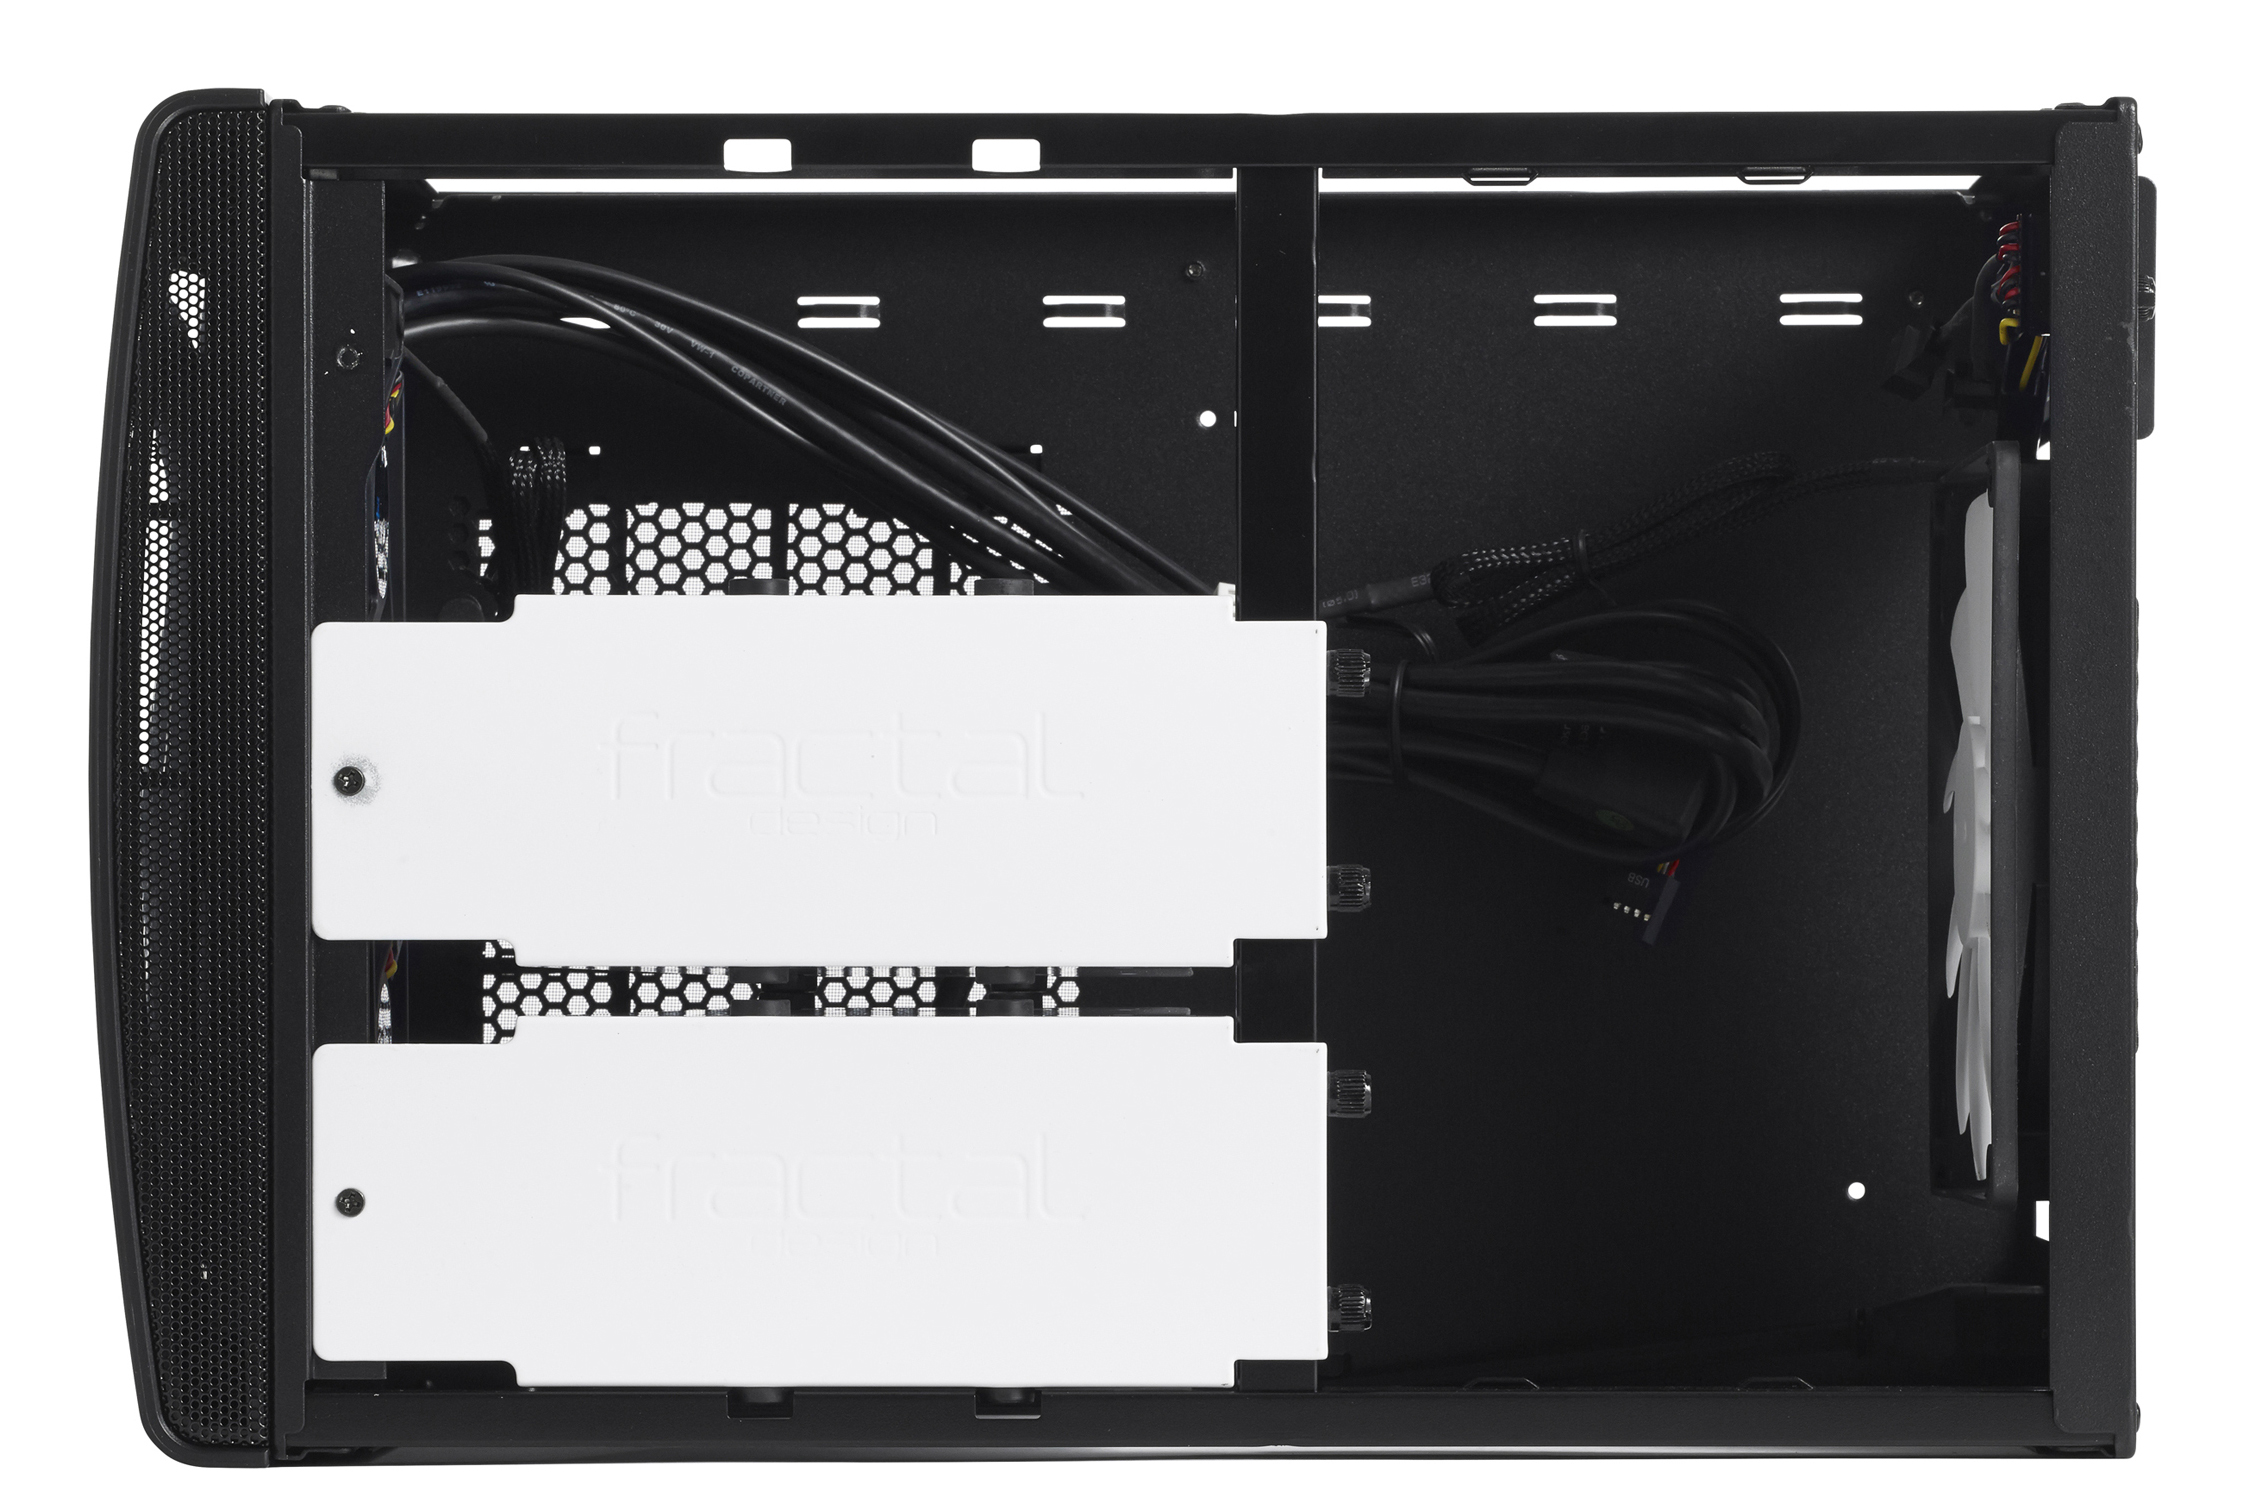 Fractal Design - Torre Mini-ITX Fractal Design Node 304 black